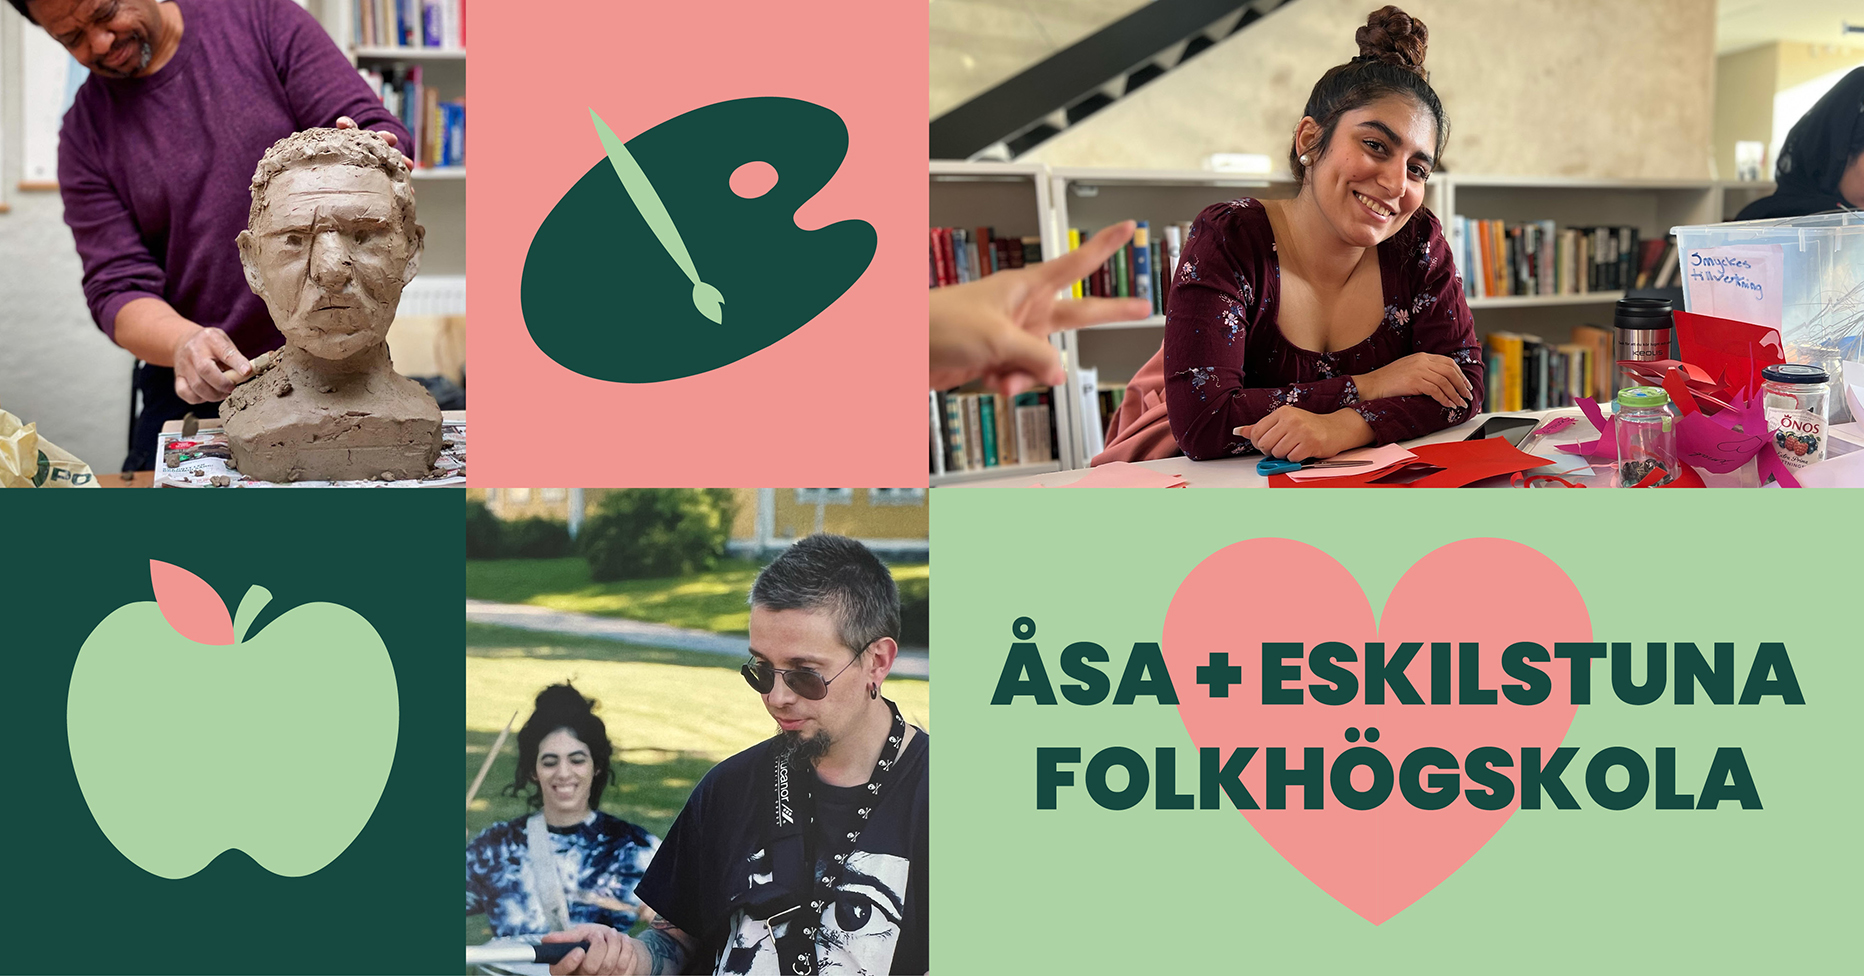 Åsa och Eskilstuna folkhögskolor firar Folkhögskolans dag veckan lång.